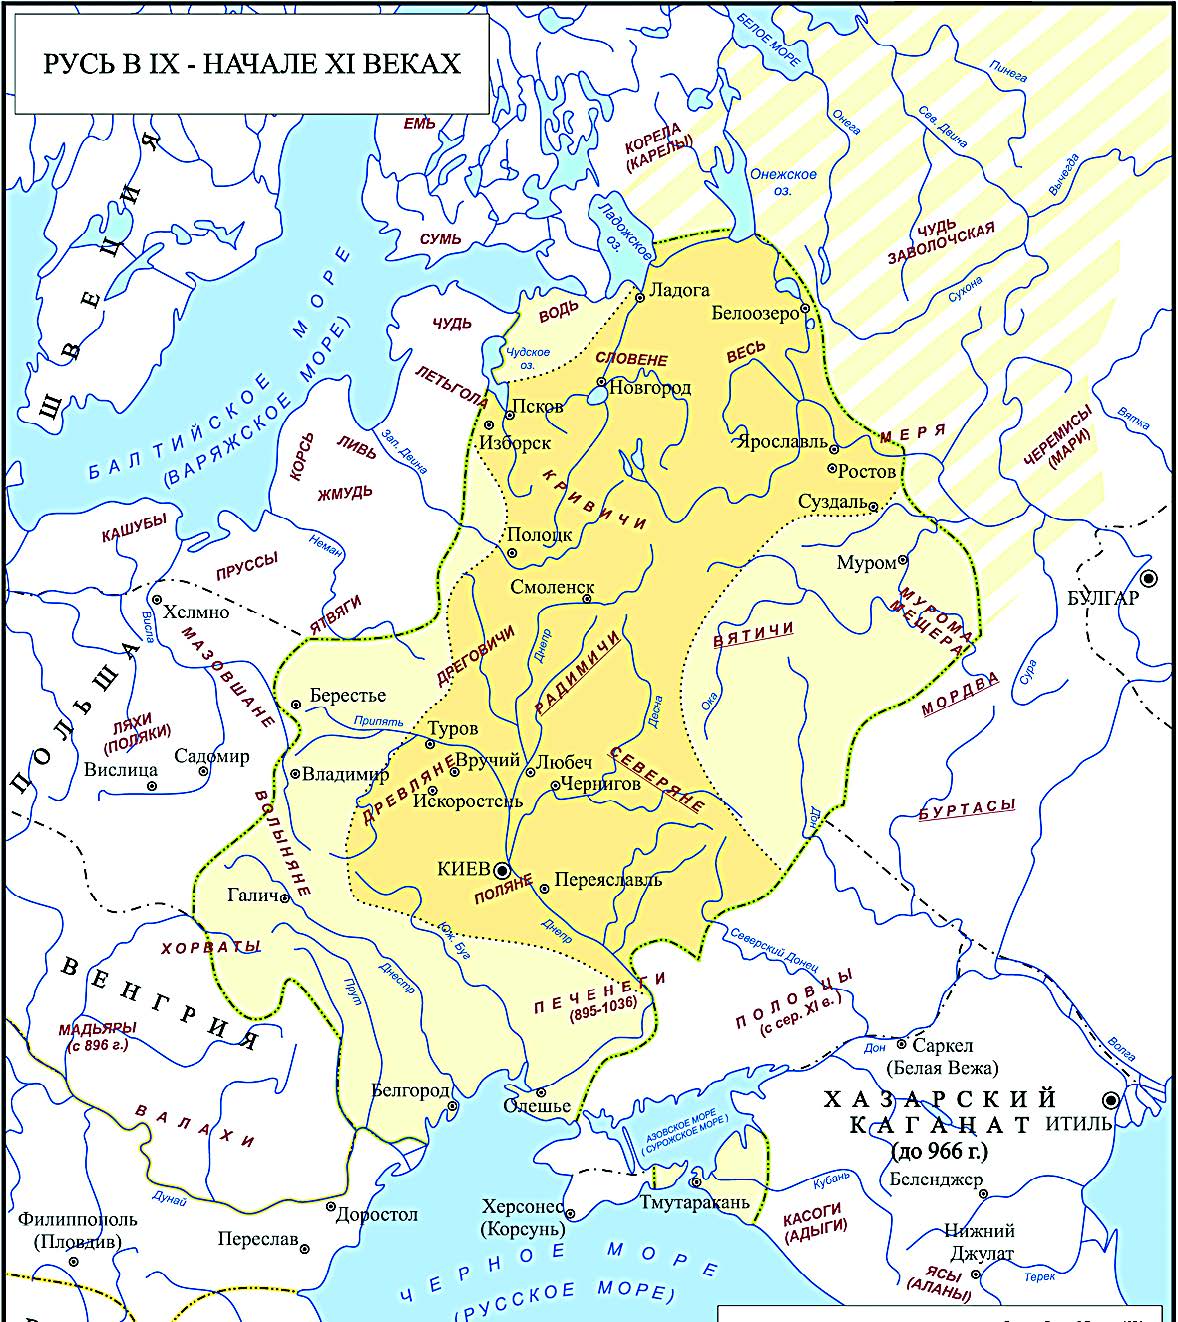 Карта Руси изначальной с отметками археологических памятников скандинавского
типа по Г. Лебедеву и В. Назаренко.